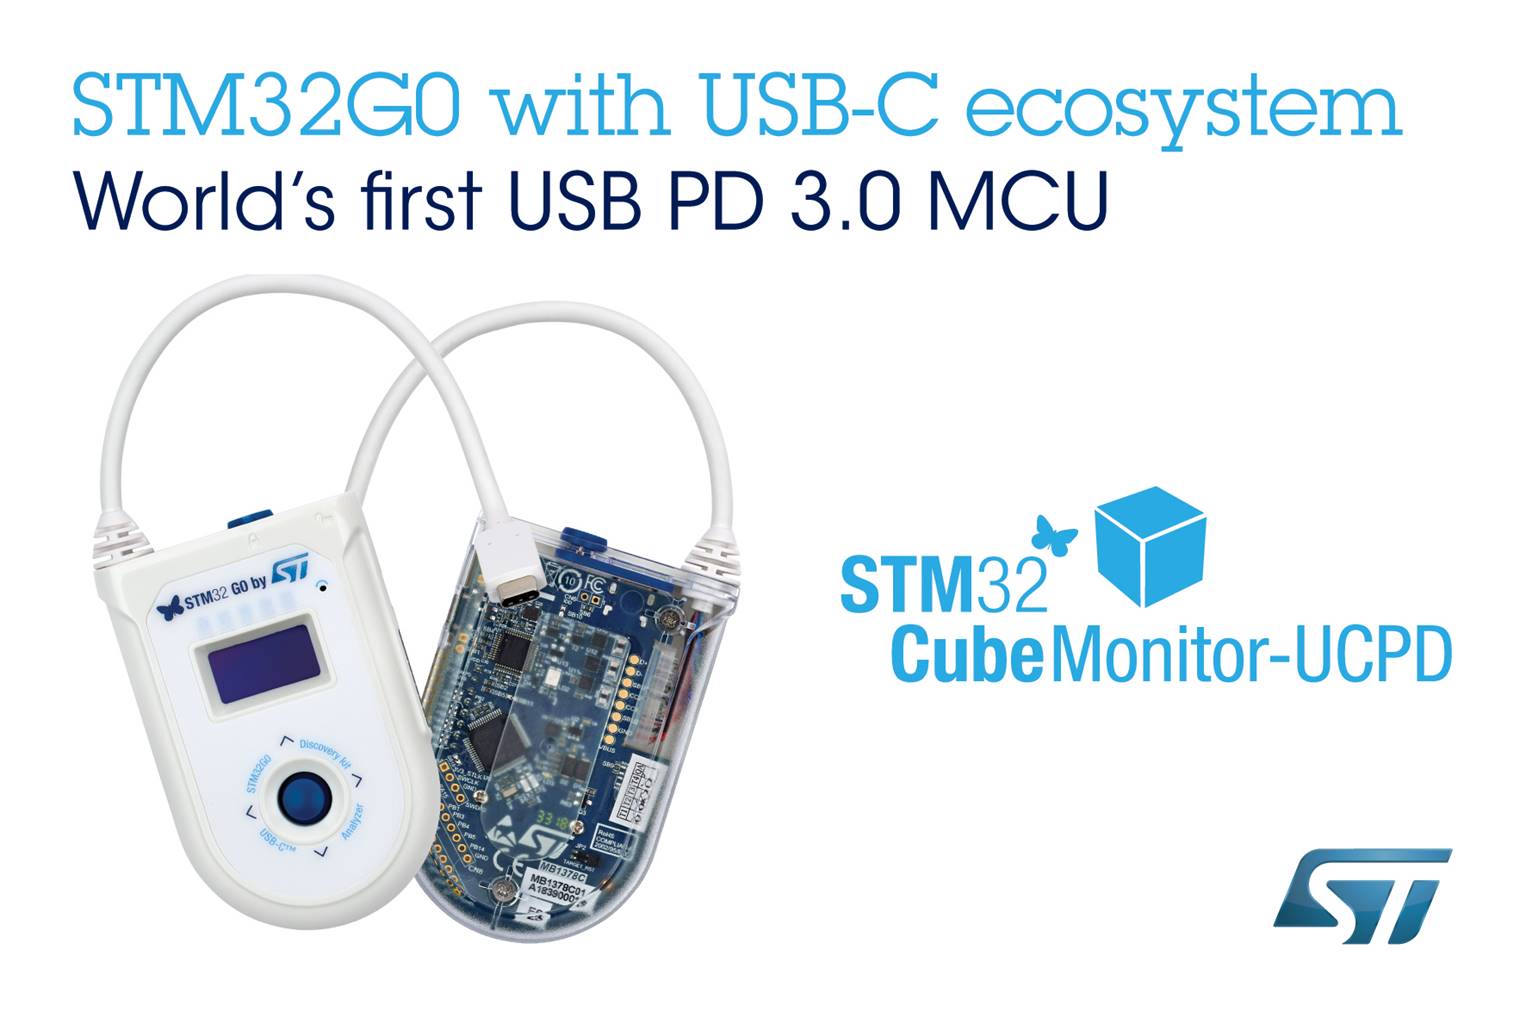 Dünyanın Ilk USB PD 3.0 Mikrodenetleyicisi, STM32G0